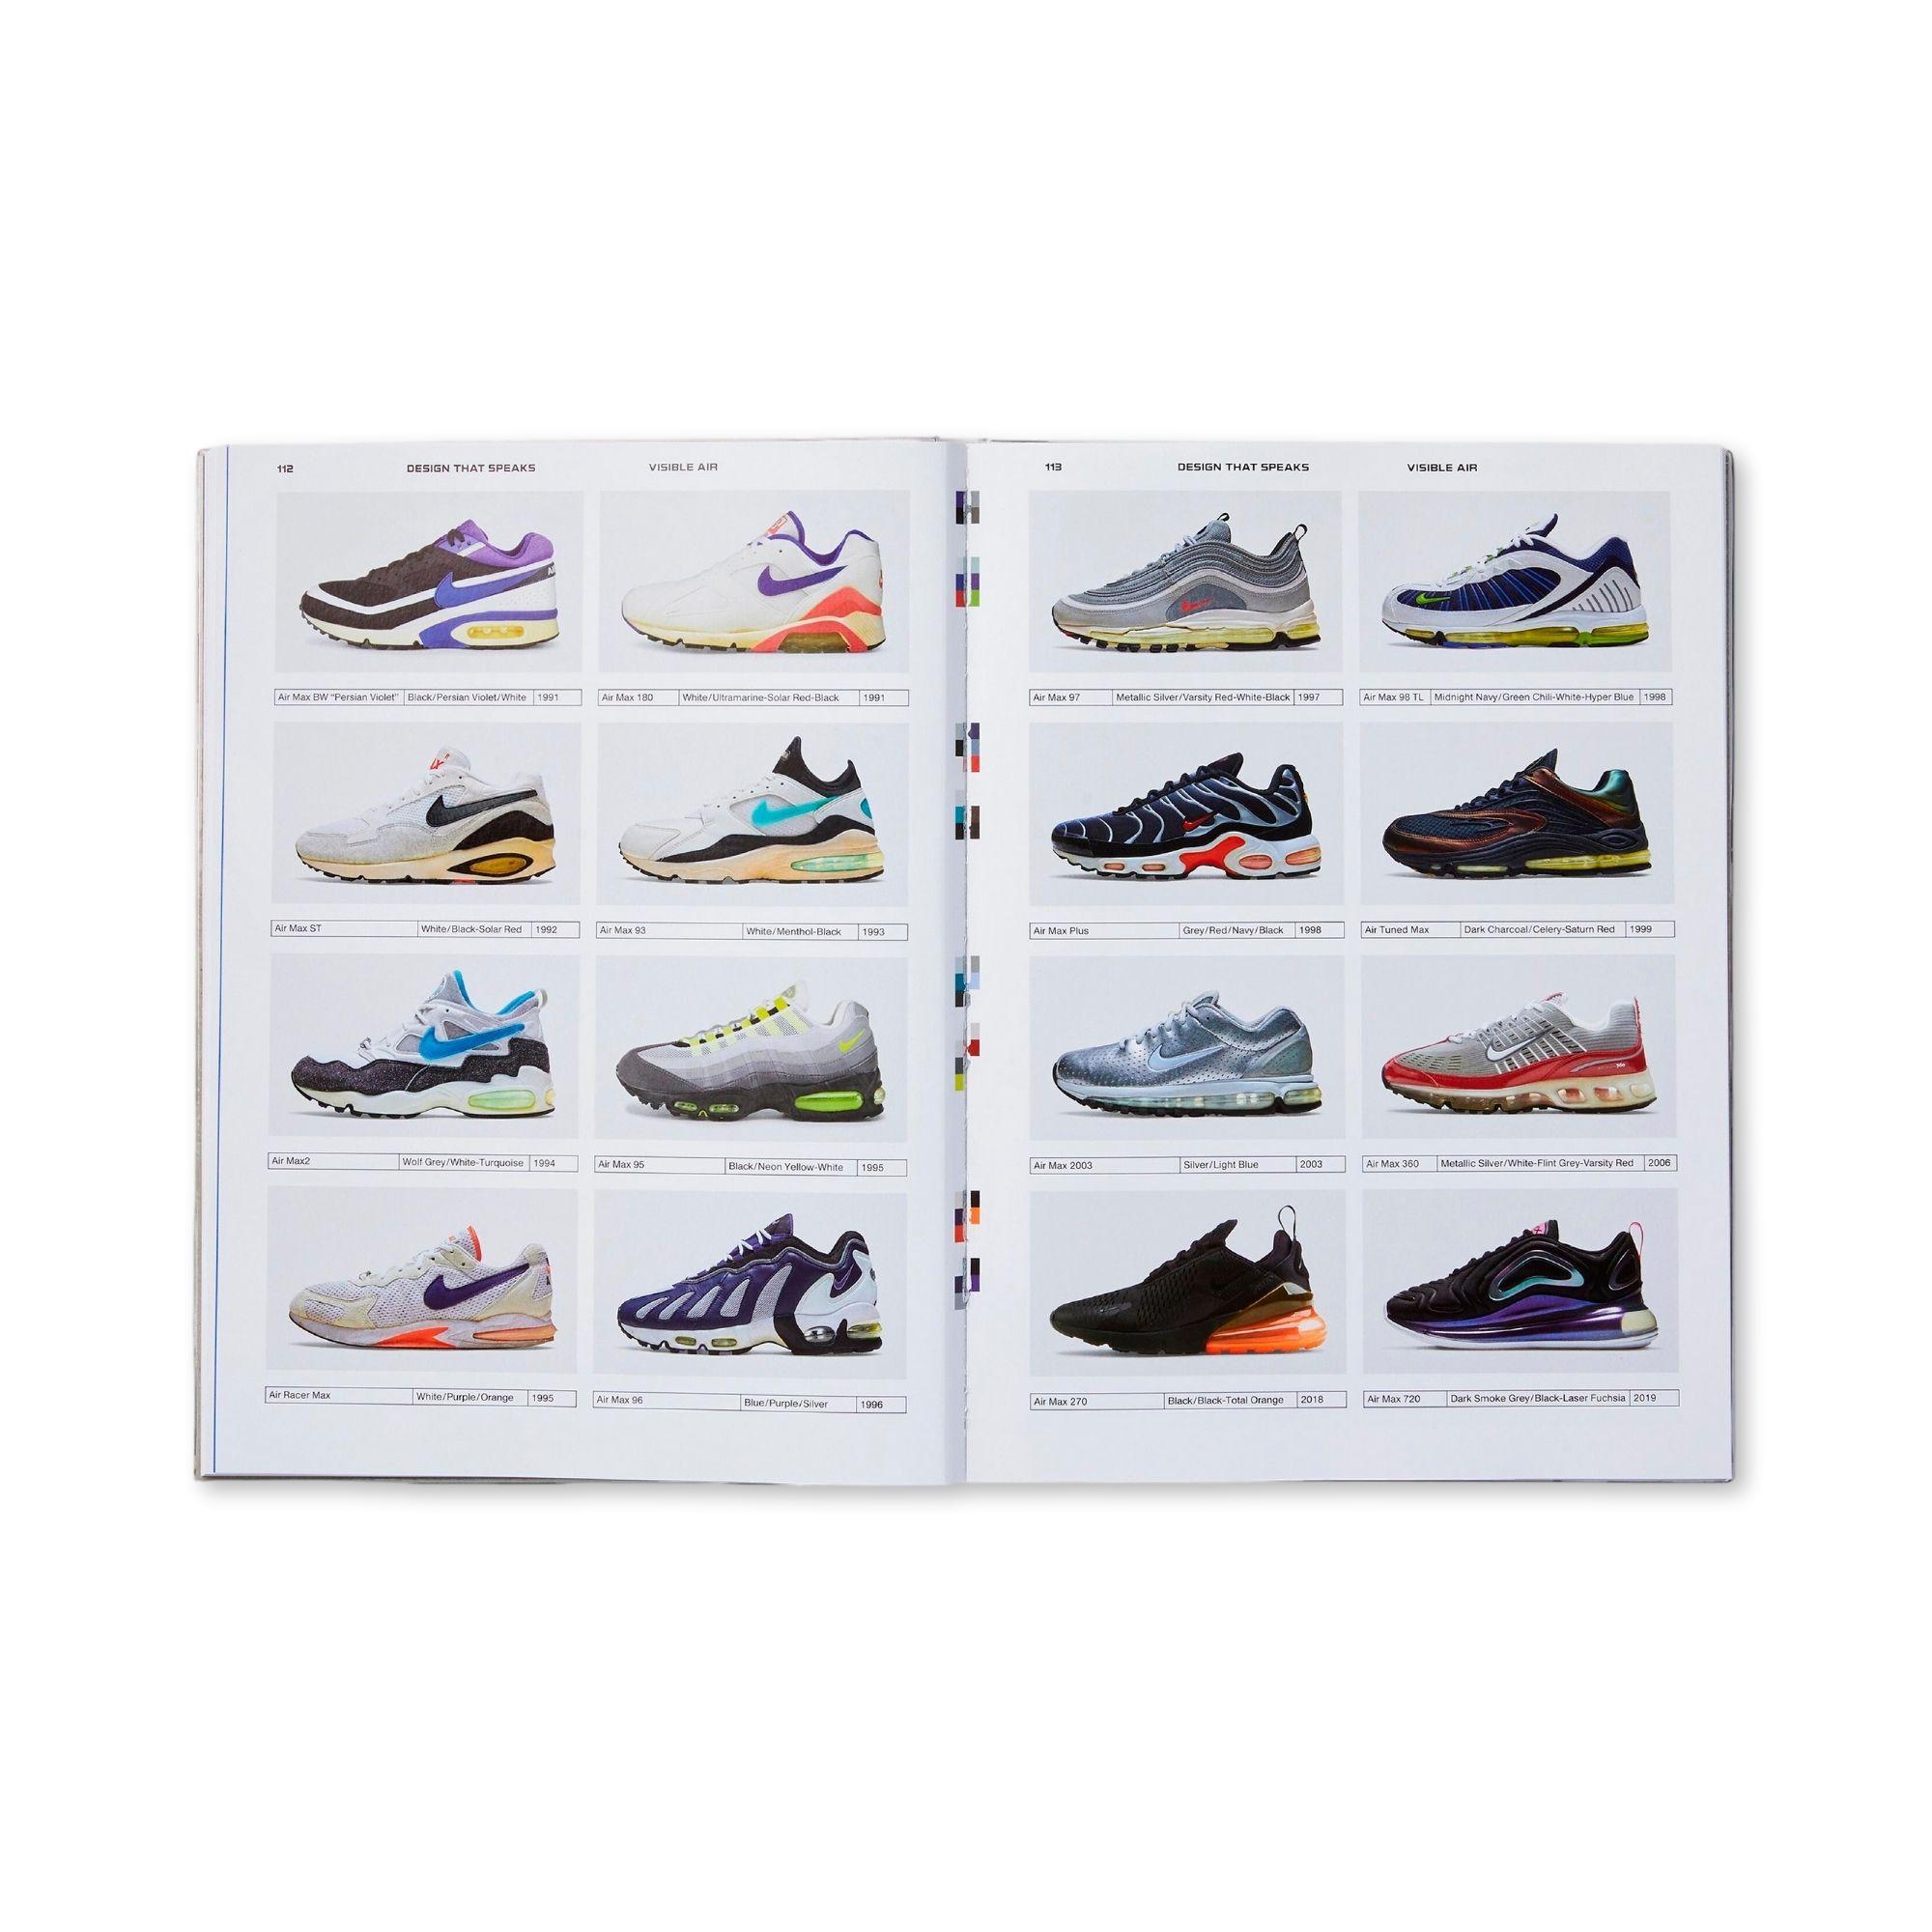 Nike Air book photo history Air max